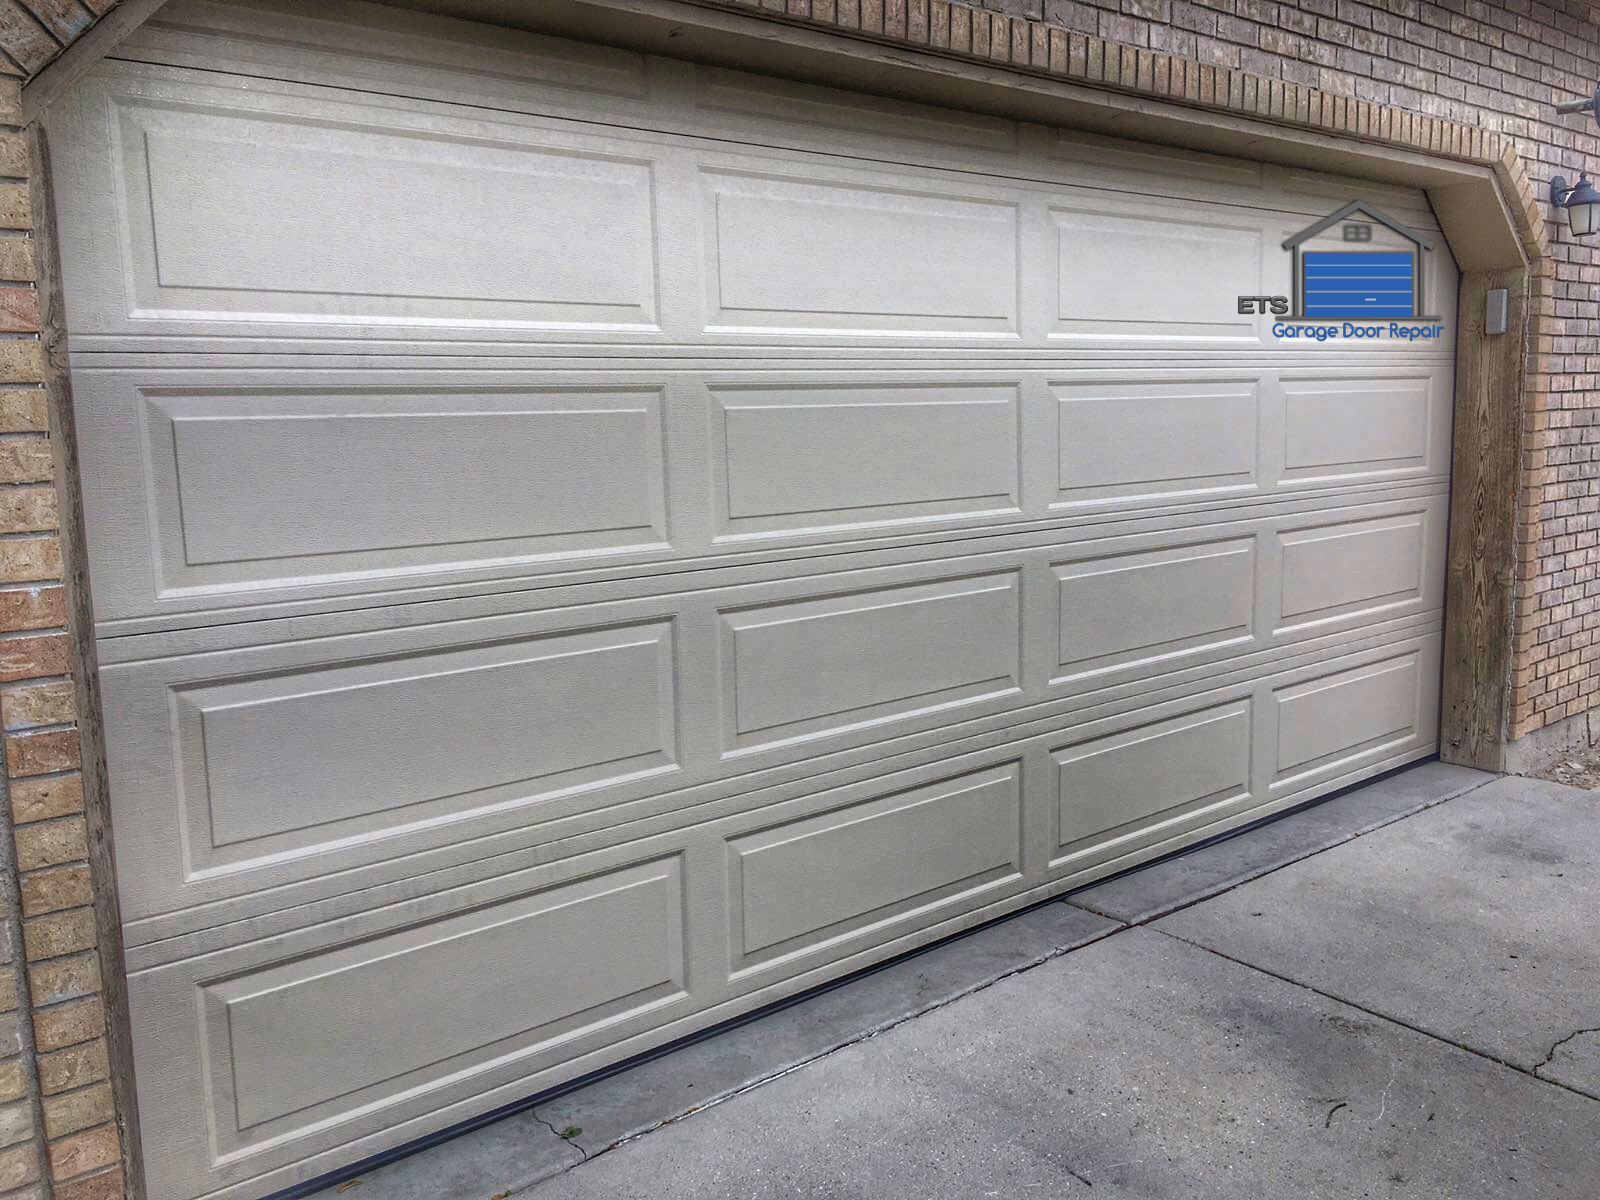 ETS Garage Door Repair Of Gresham - Garage Door Repair & Installation Services4